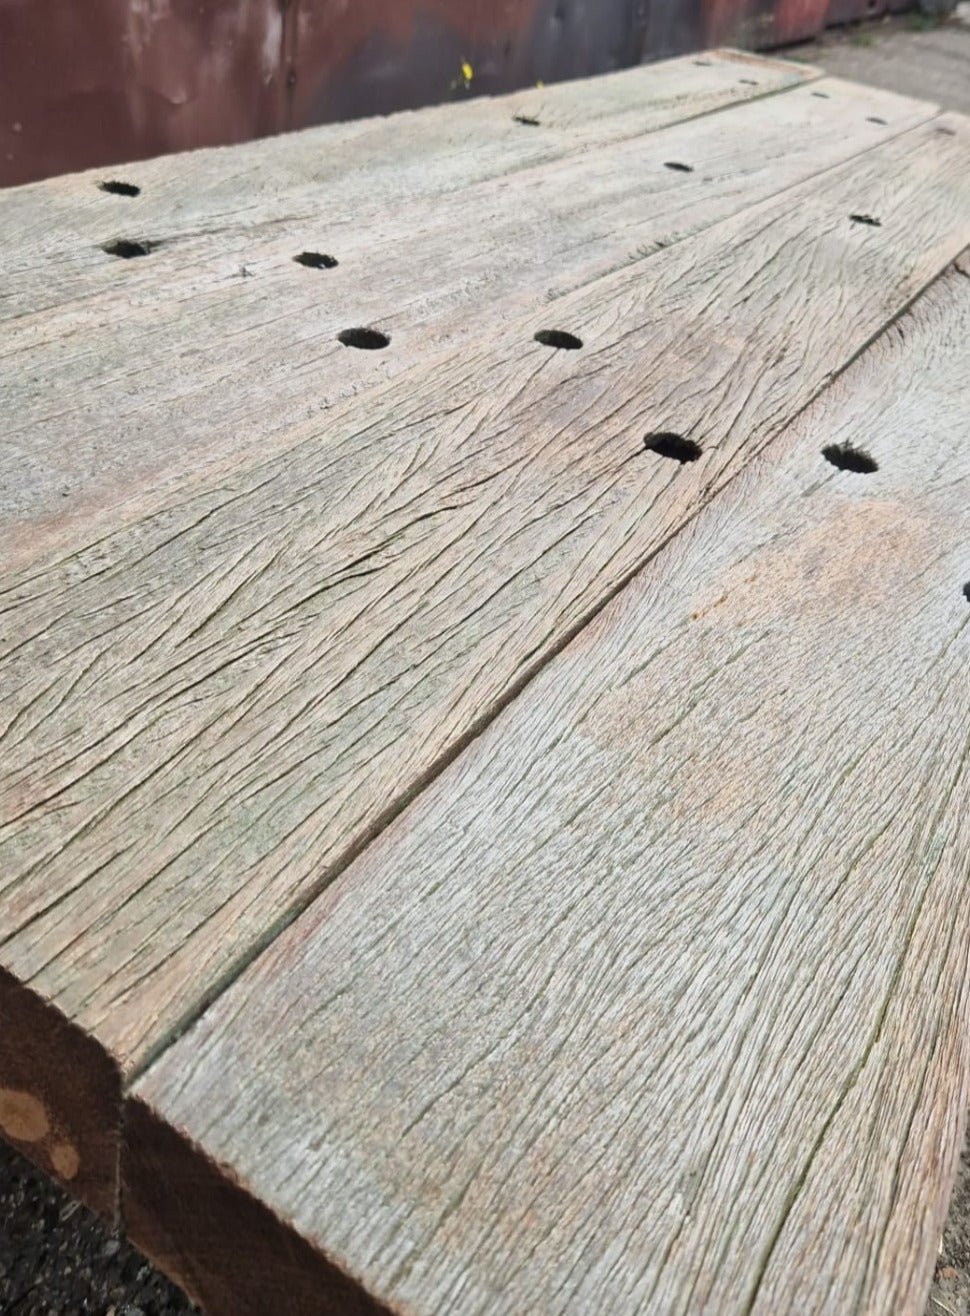 Type 2 Iroko planken, 80 x 13 x 1.4 cm, gerecycled en betaalbaar hout, ideaal voor gevel- of wandbekleding.